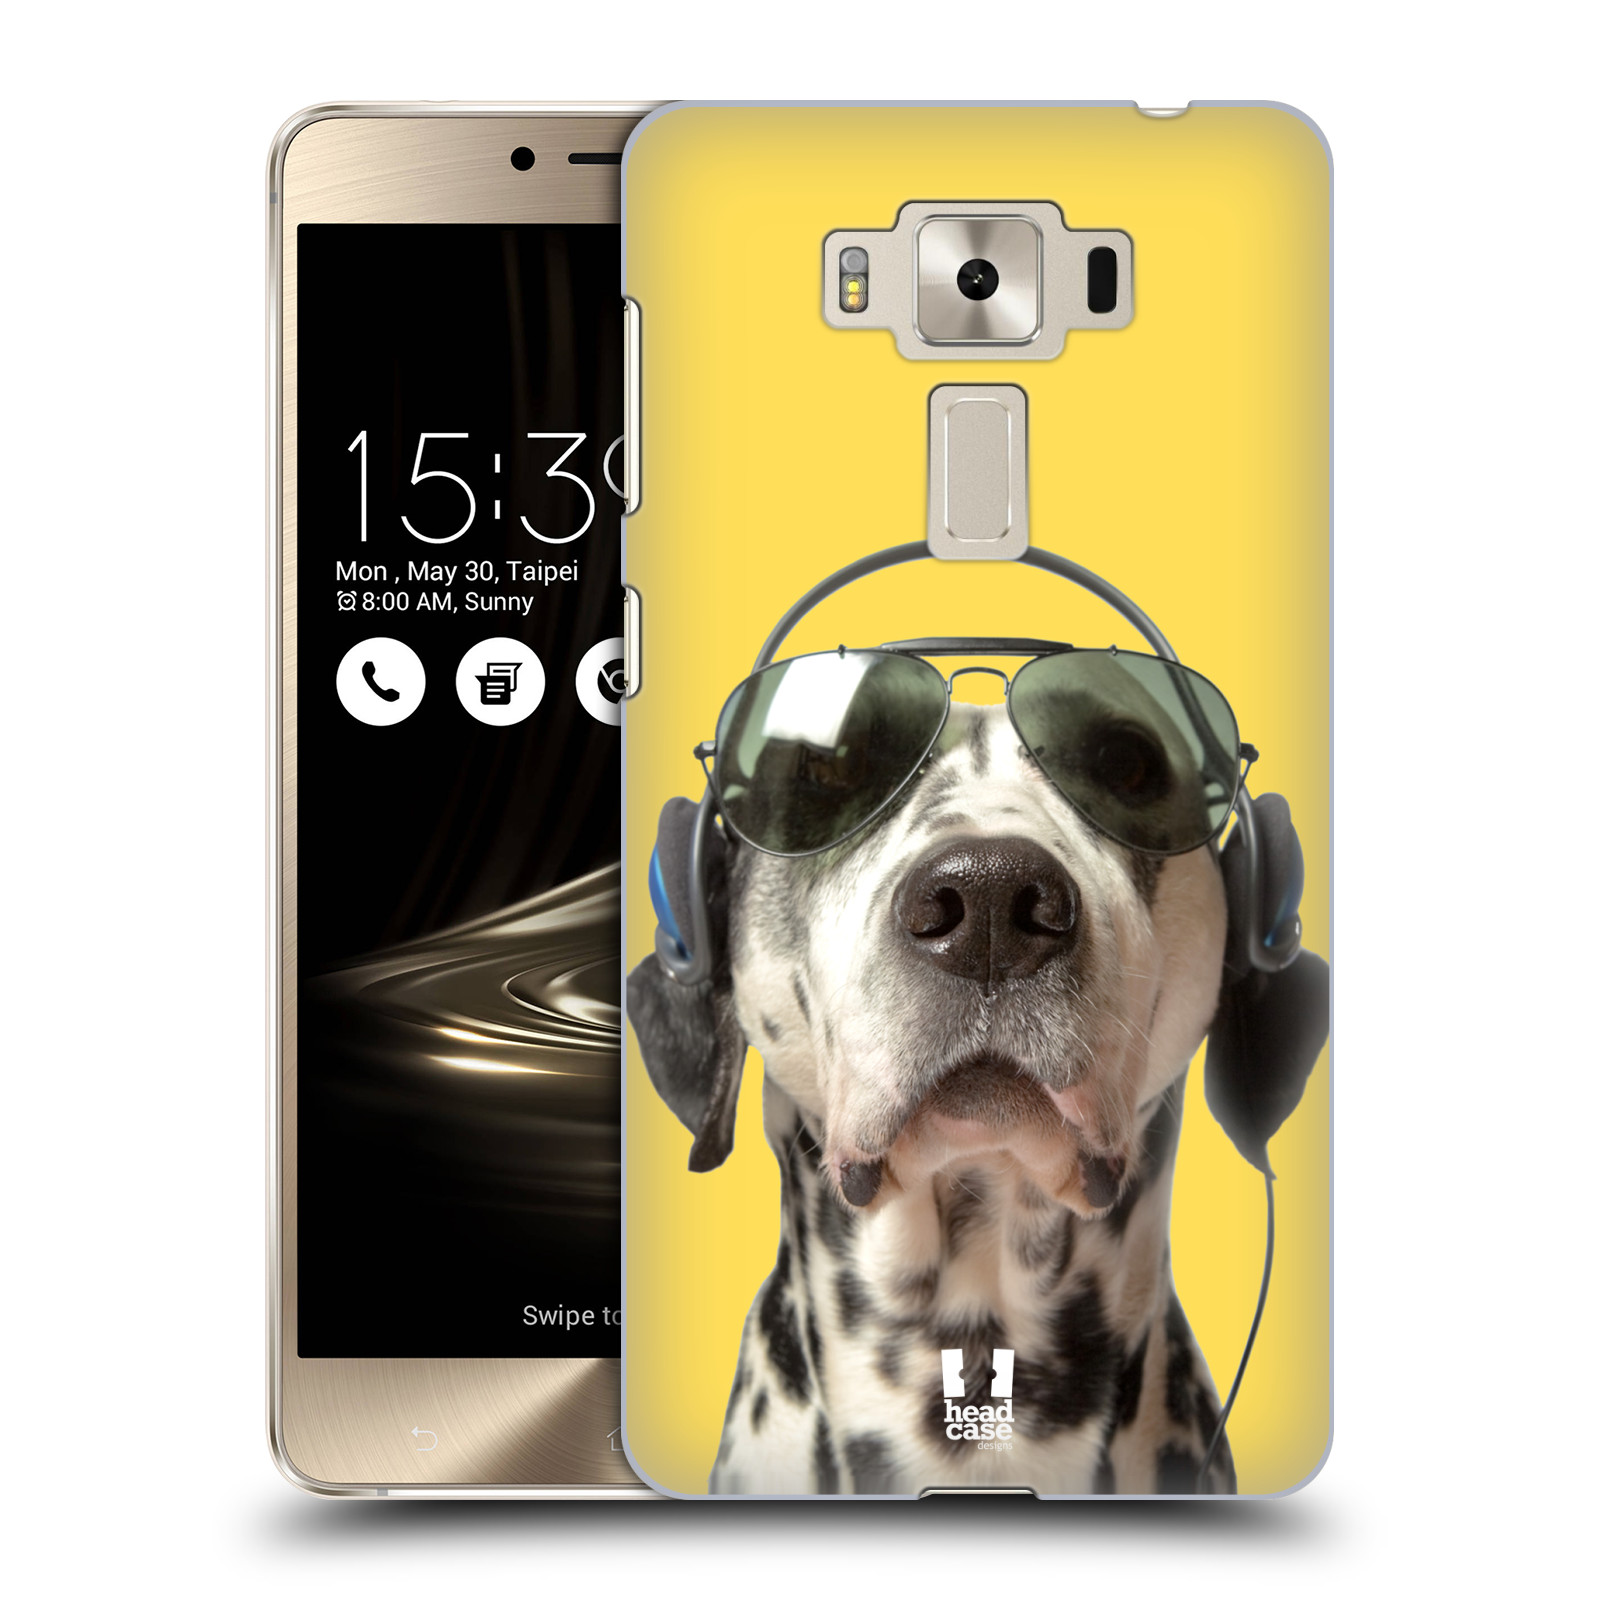 HEAD CASE plastový obal na mobil Asus Zenfone 3 DELUXE ZS550KL vzor Legrační zvířátka dalmatin se sluchátky žlutá